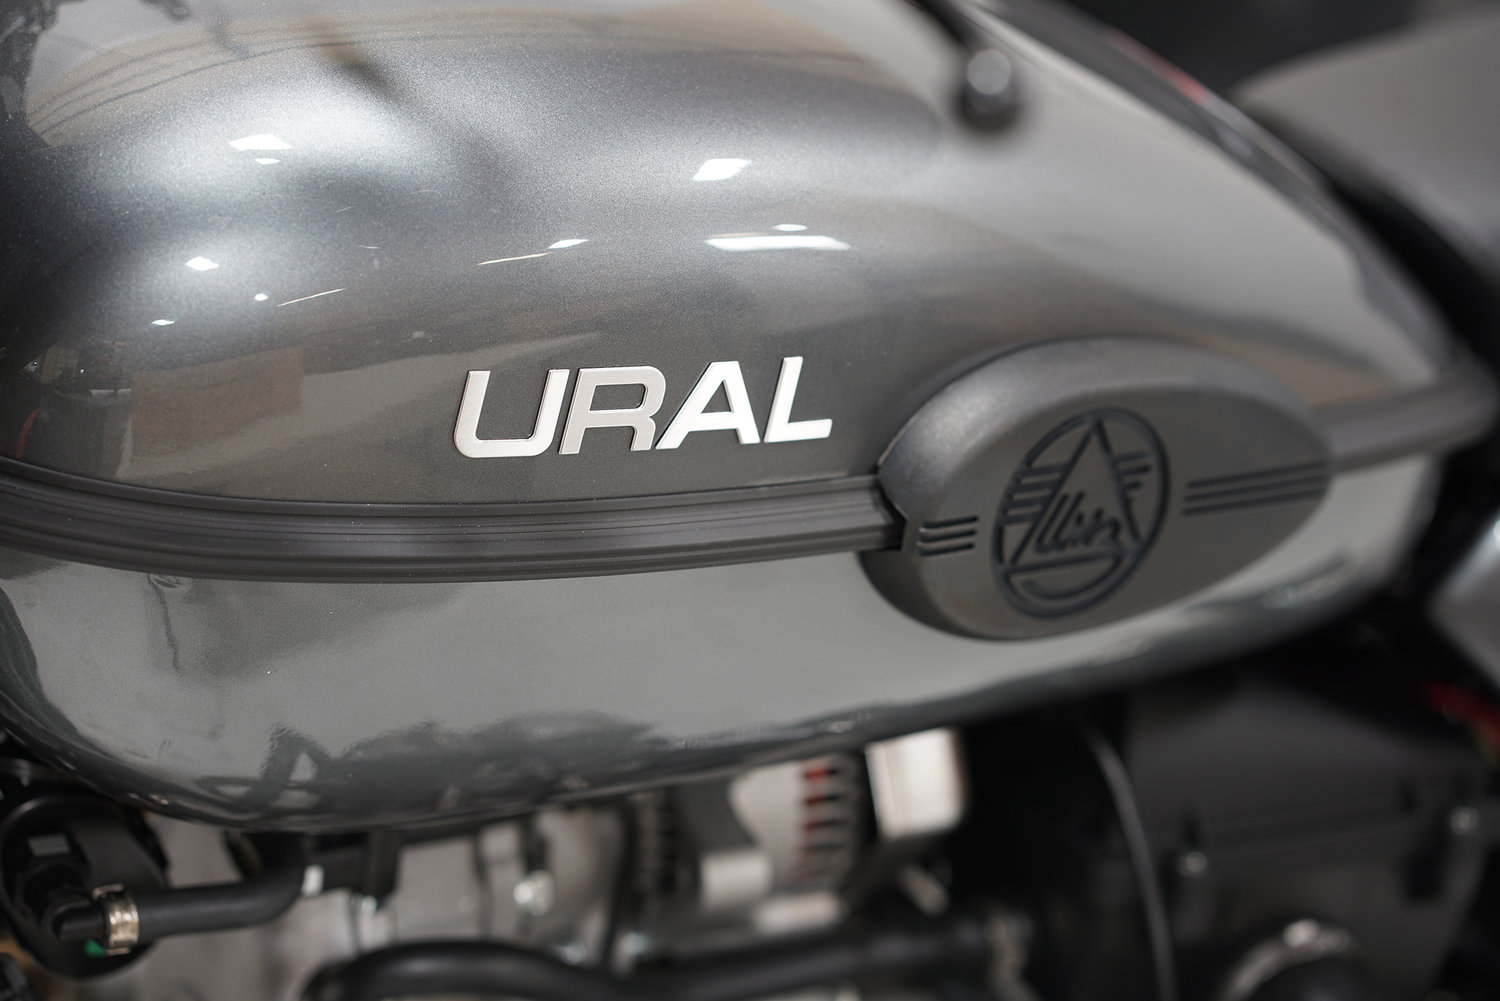 ural sidecar motorcycles patrol 3